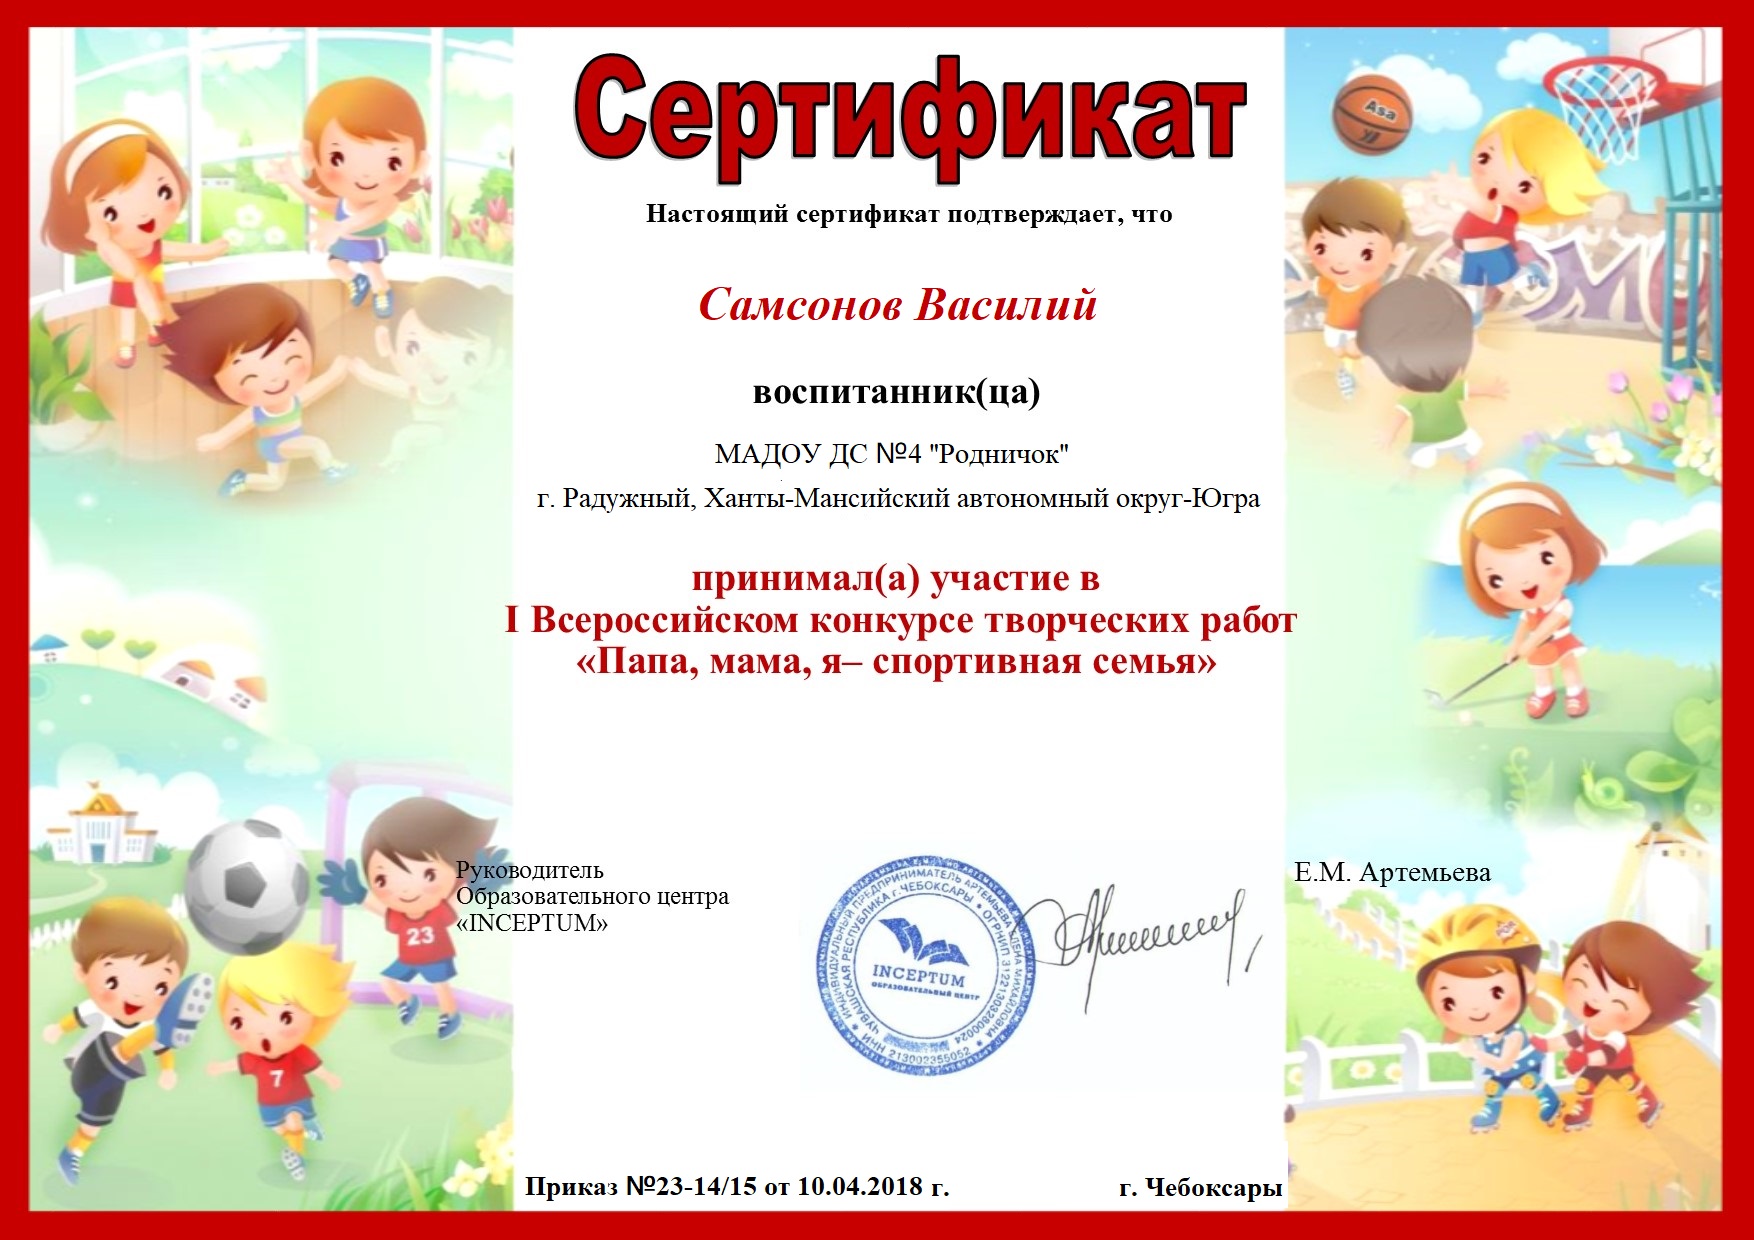 Шаблон грамоты спортивная семья. Сертификат для детей. Сертификат для детского сада. Сертификат с детским рисунком. Сертификаты для детей детского сада.